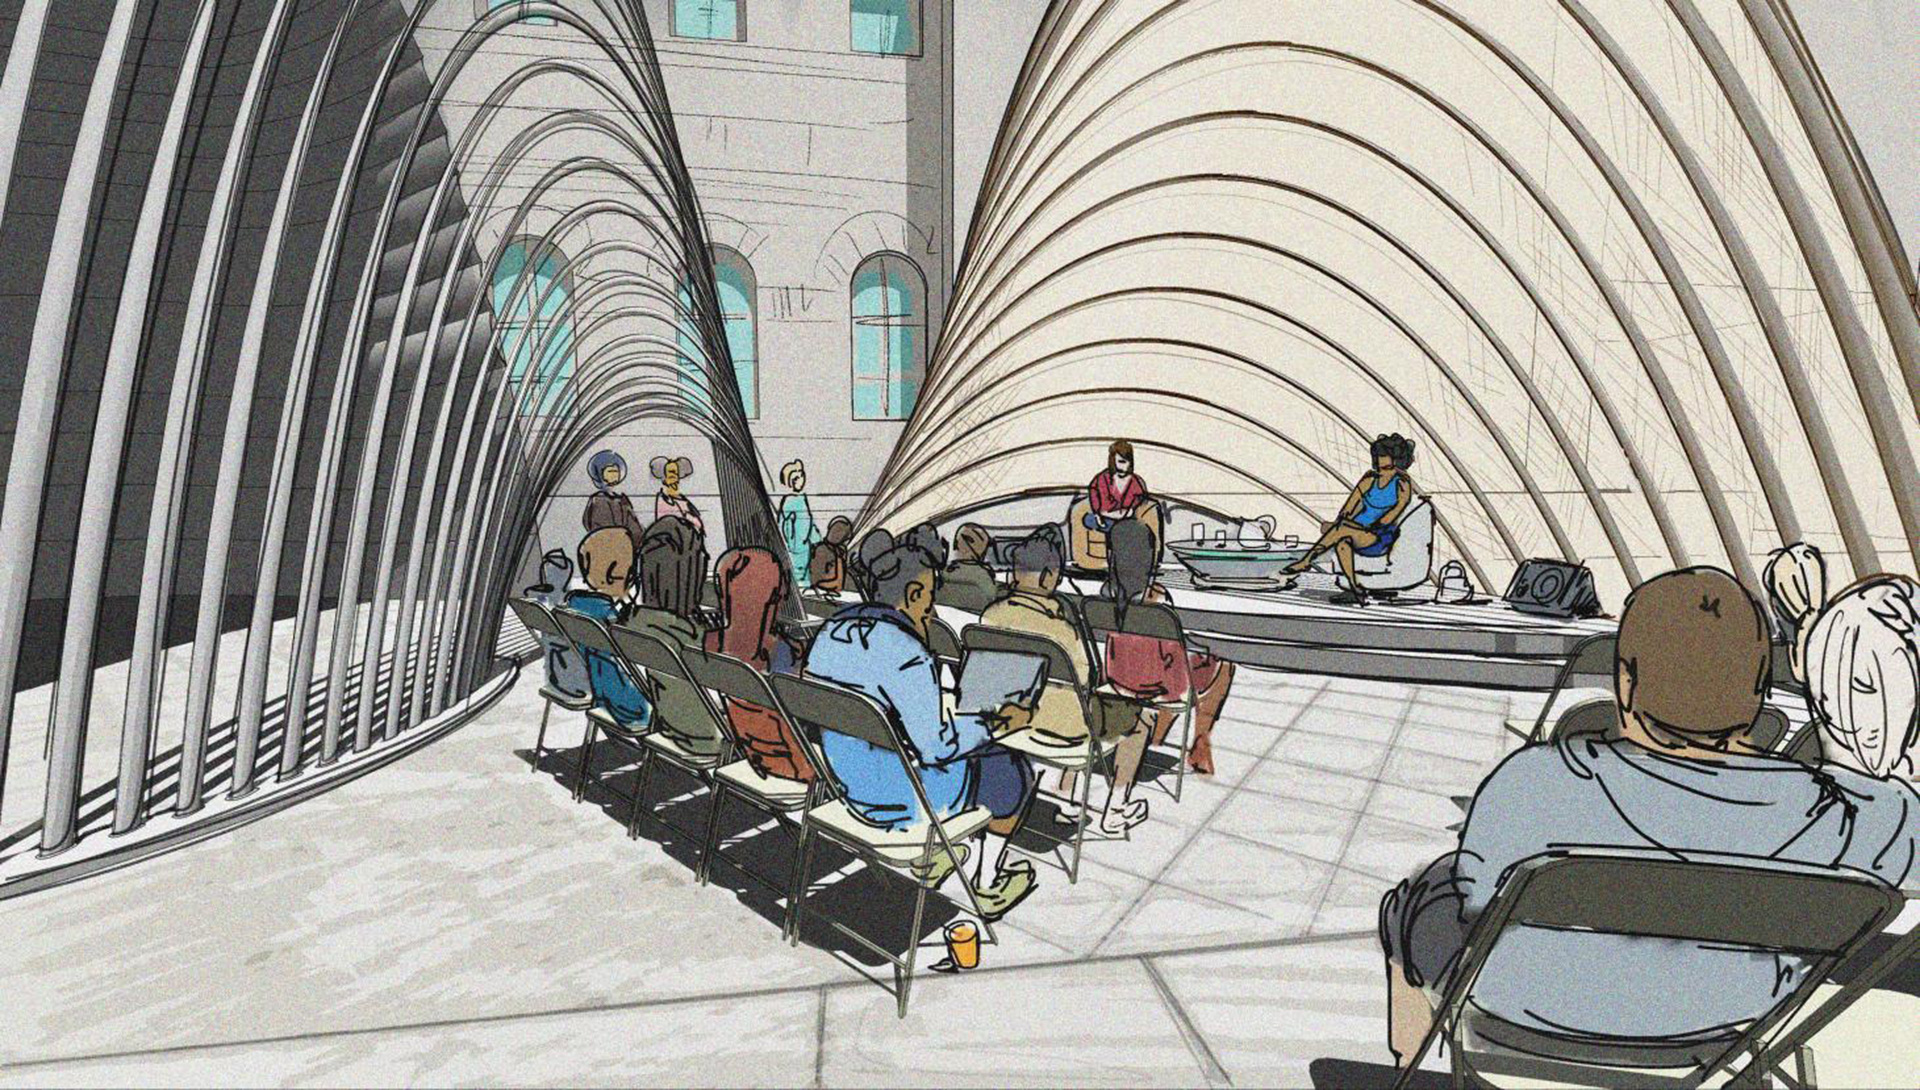 Лондонская биеннале дизайна 2021: павильон-парус Ини Арчибонга